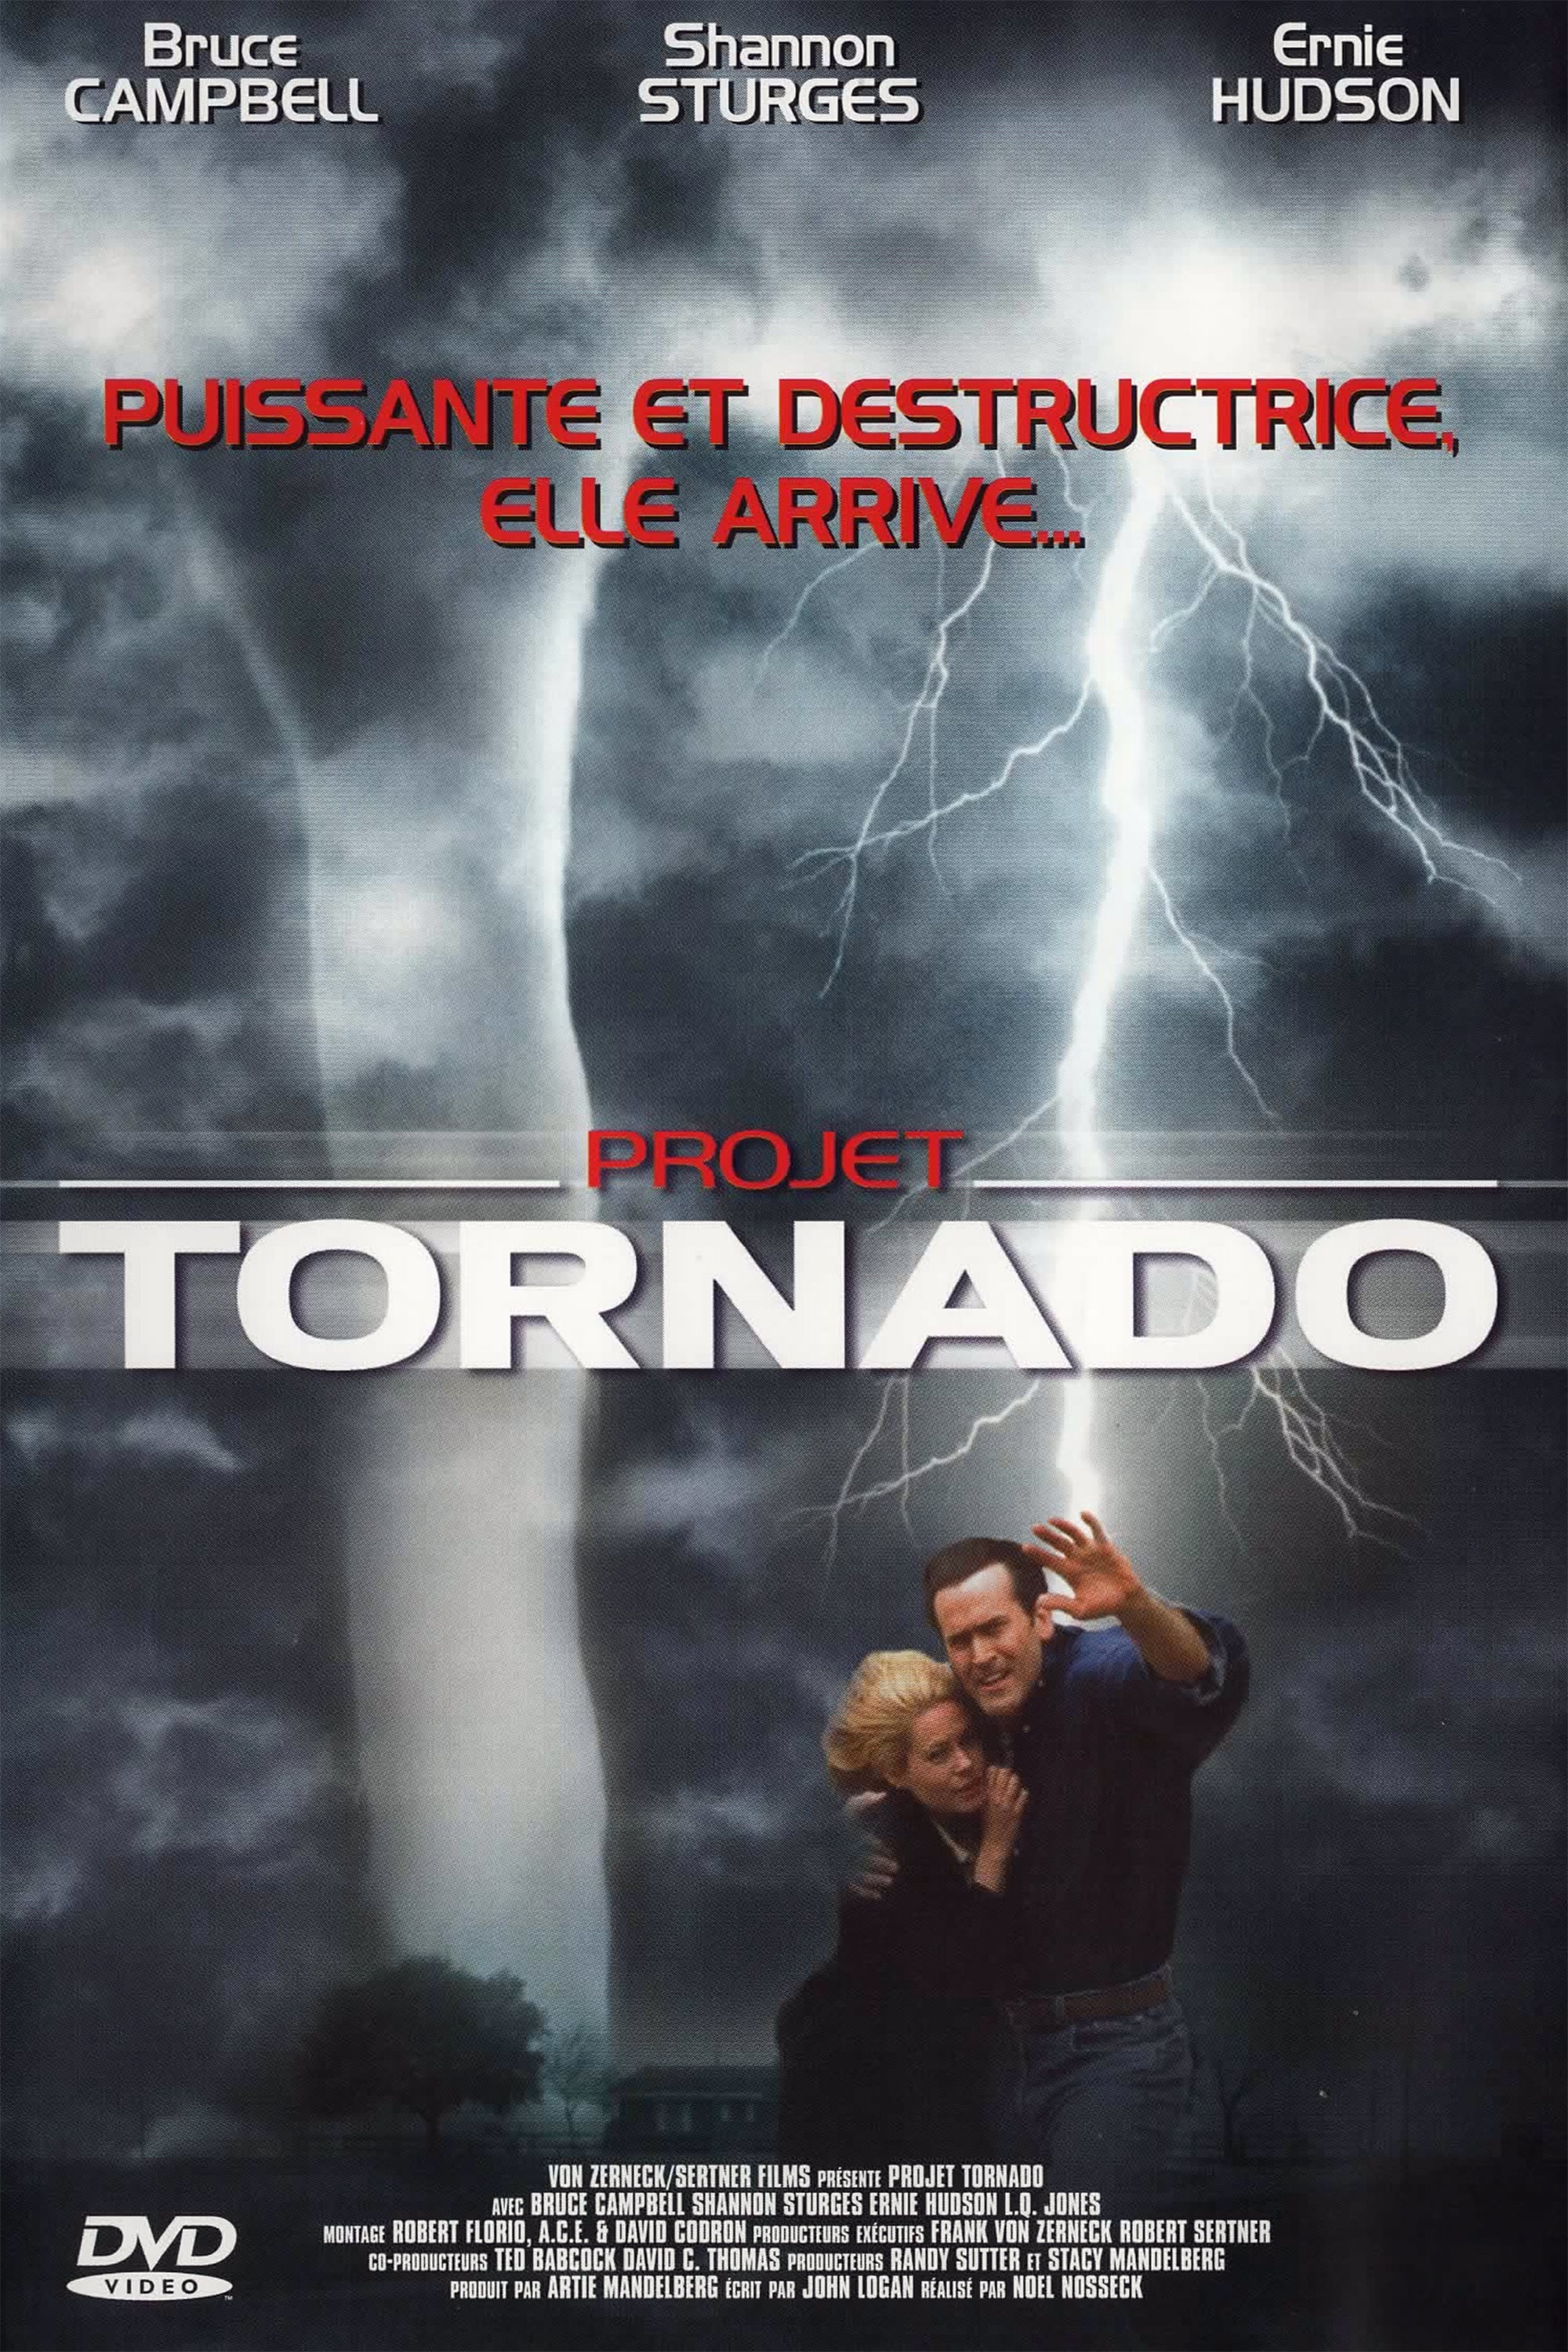 Торнадо 1996. Торнадо фильм 1996 Брюс Кэмпбелл. Торнадо (ТВ, 1996). Смерч фильм 1996 Постер.